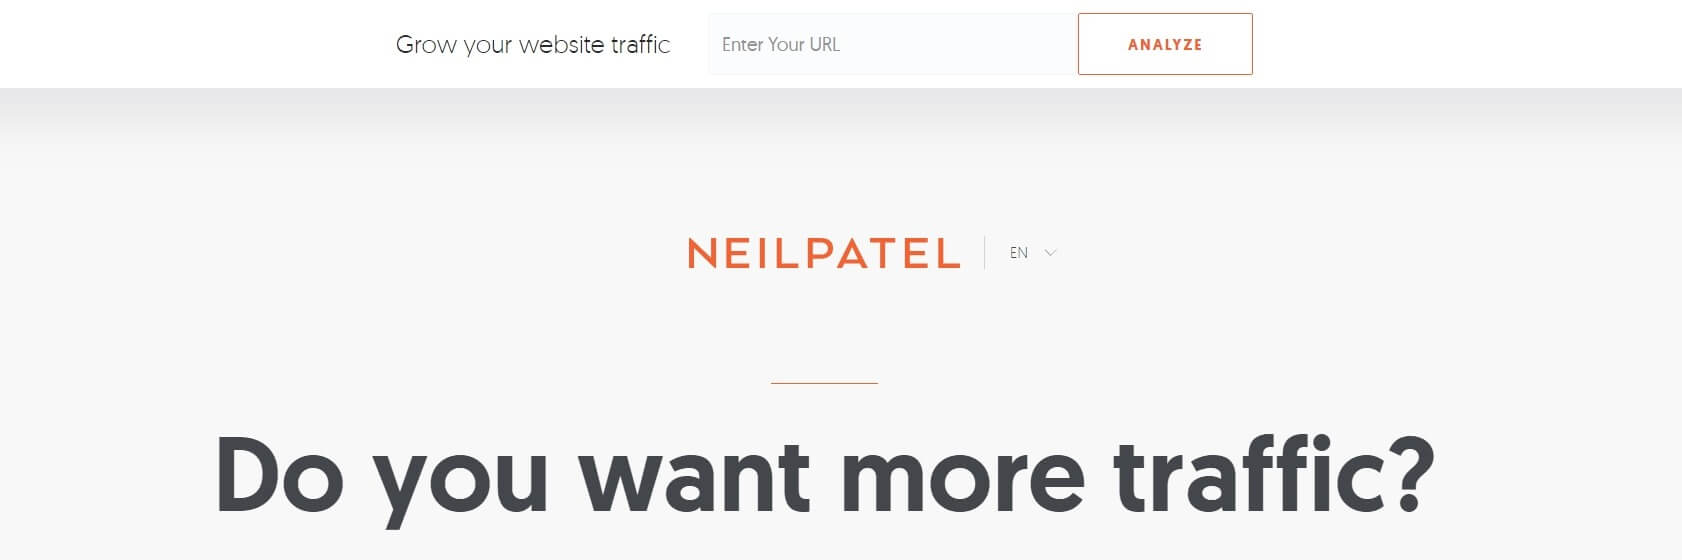 Neil Patel's website homepage